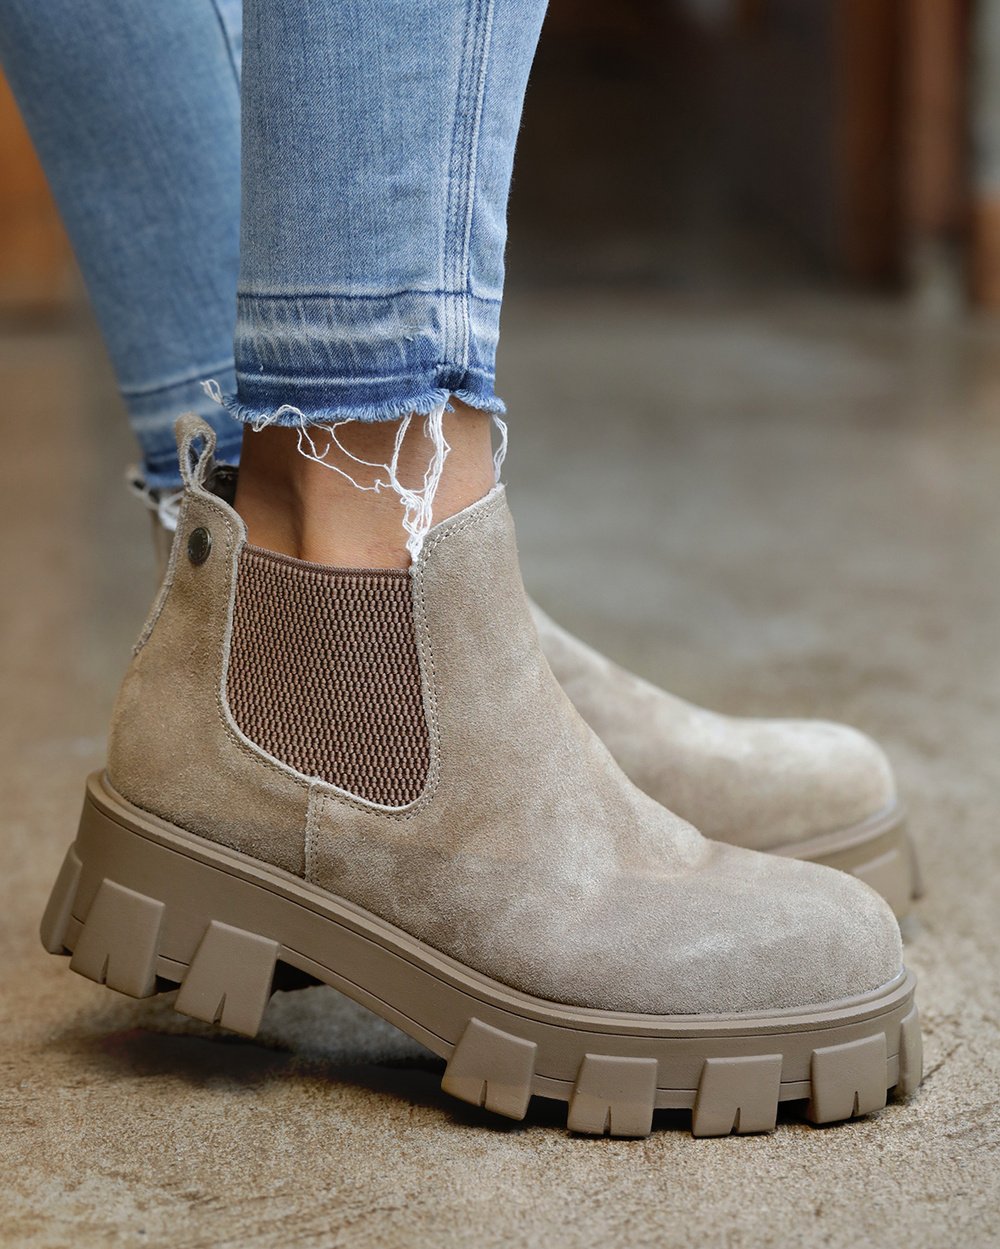 Romano - Tienda Online Zapatos de Mujer -